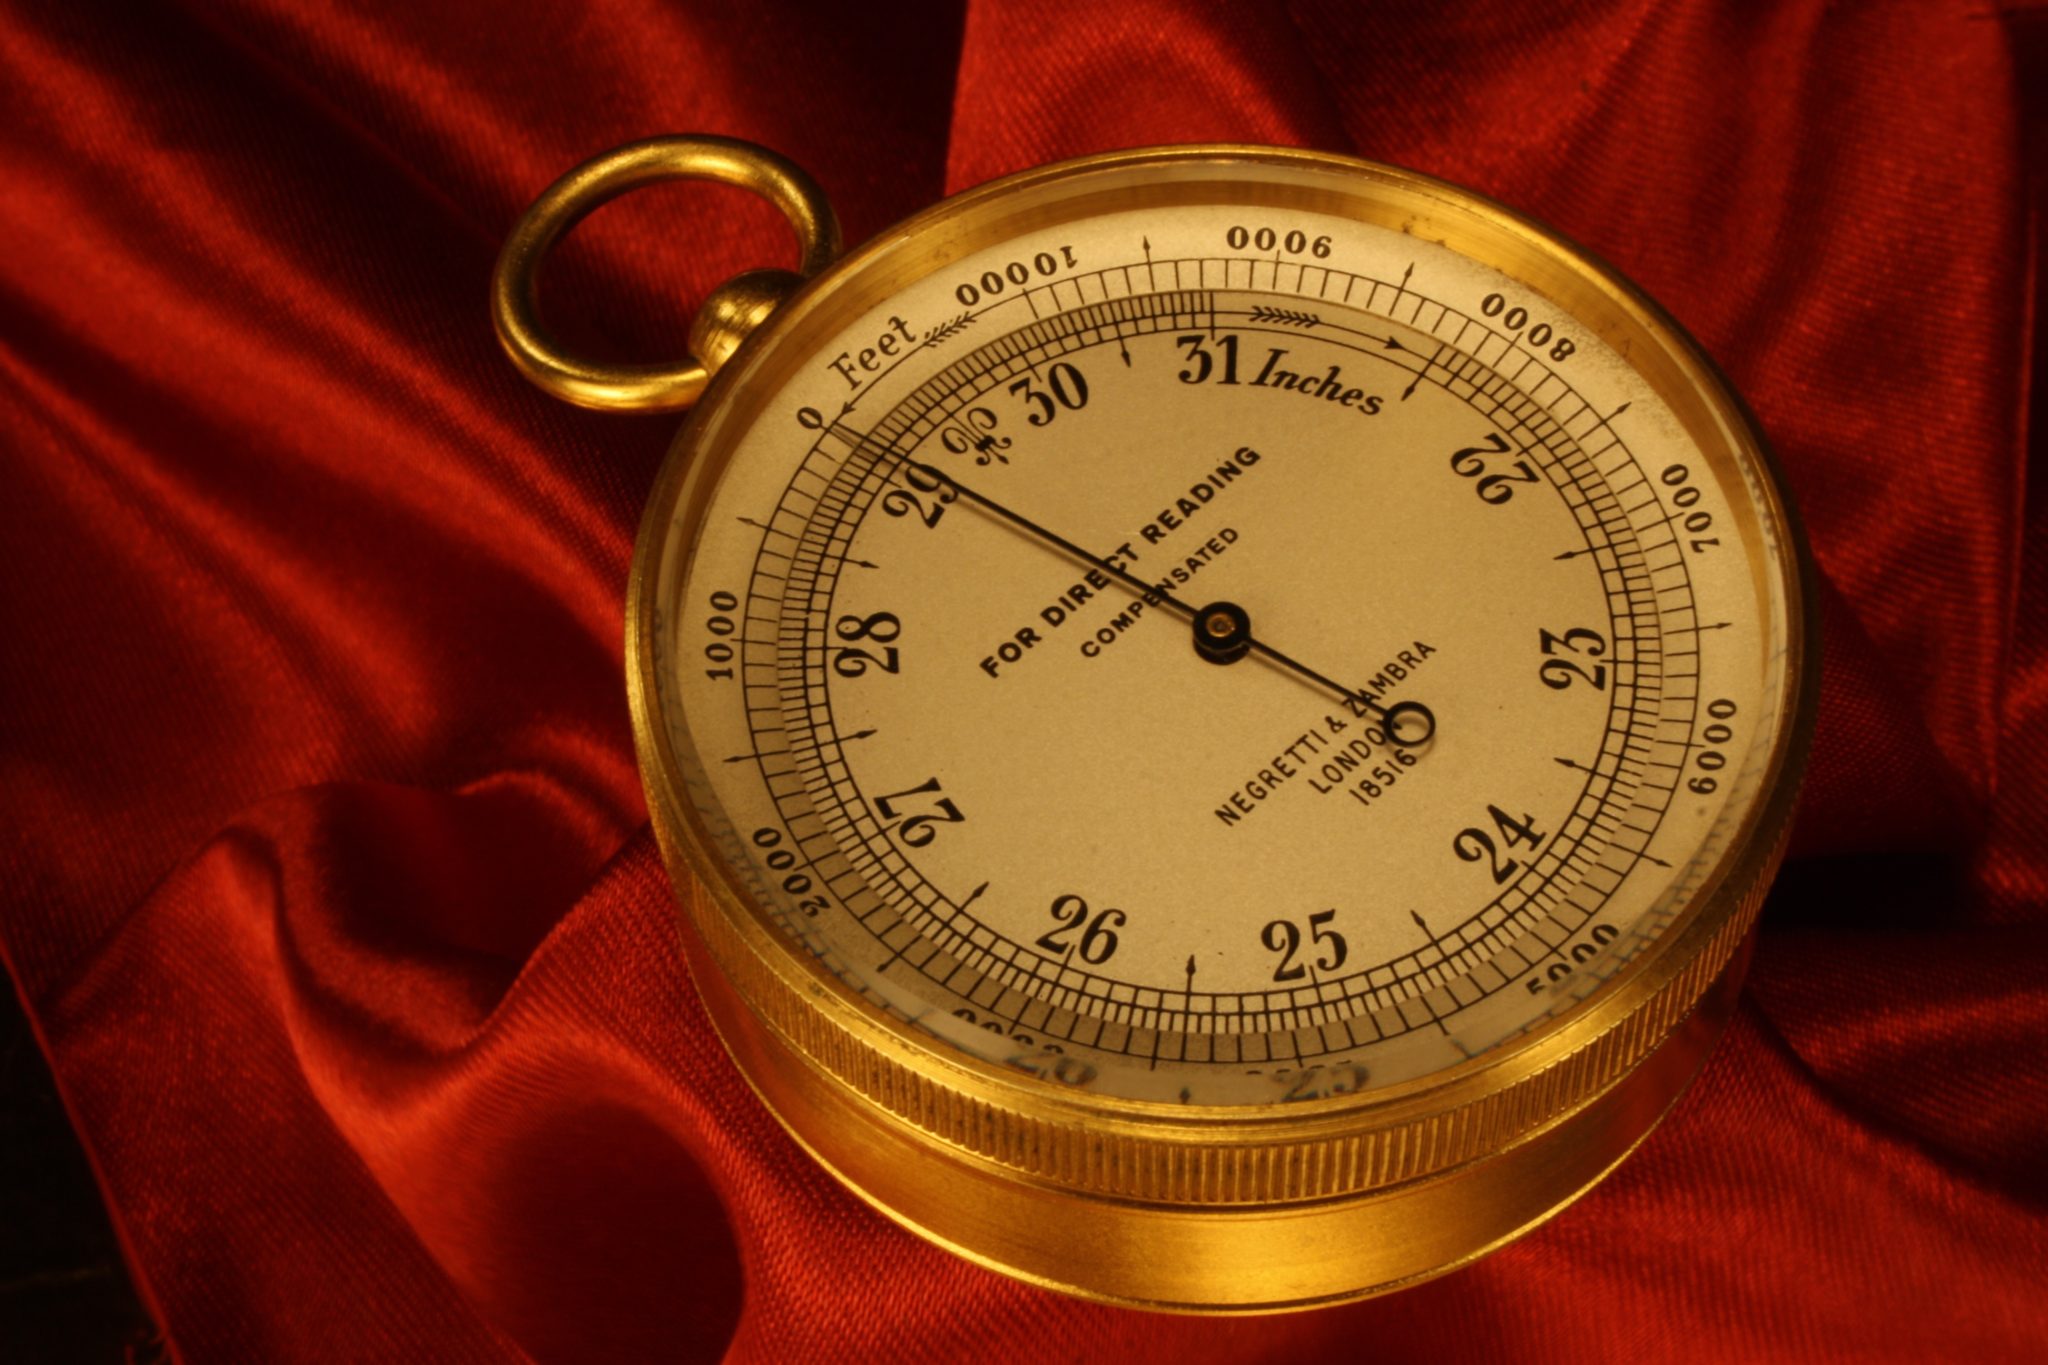 Image of Negretti & Zambra Pocket Barometer No 18516